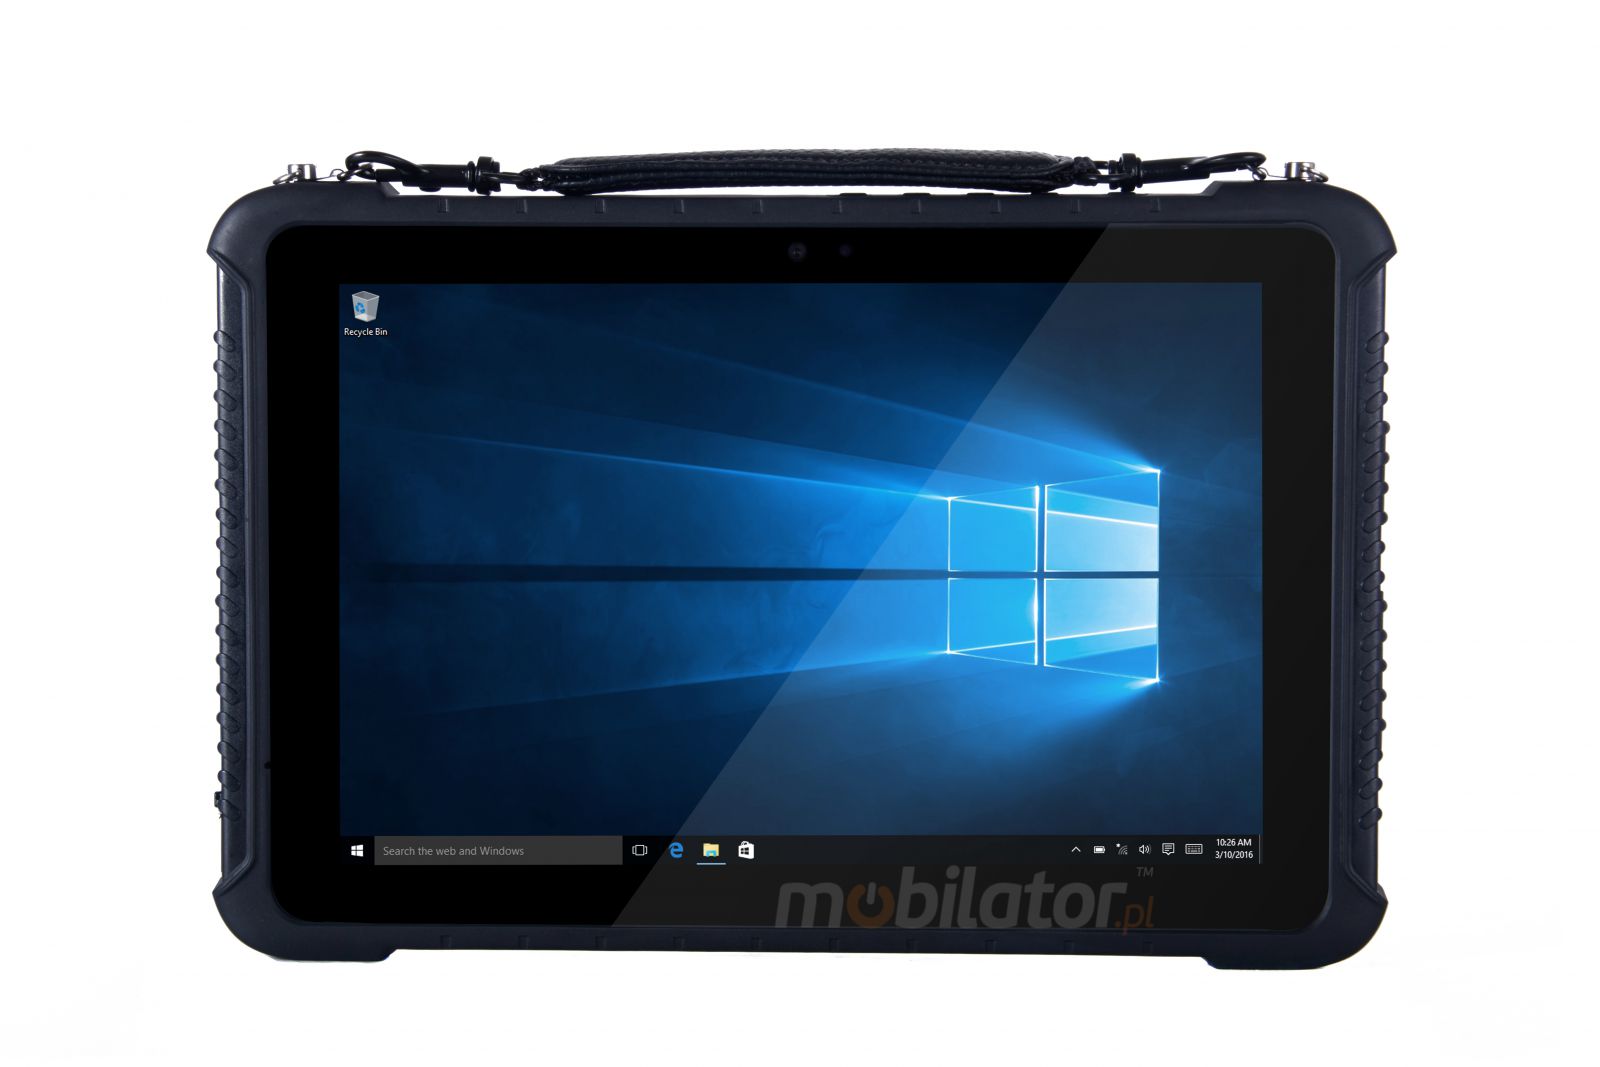 Emdoor I16K v.3 - Odporny na upadki dziesiciocalowy tablet z Bluetooth 4.2, 4GB RAM oraz dyskiem 128GB, czytnikiem kodw 2D N3680 Honeywell i 4G 